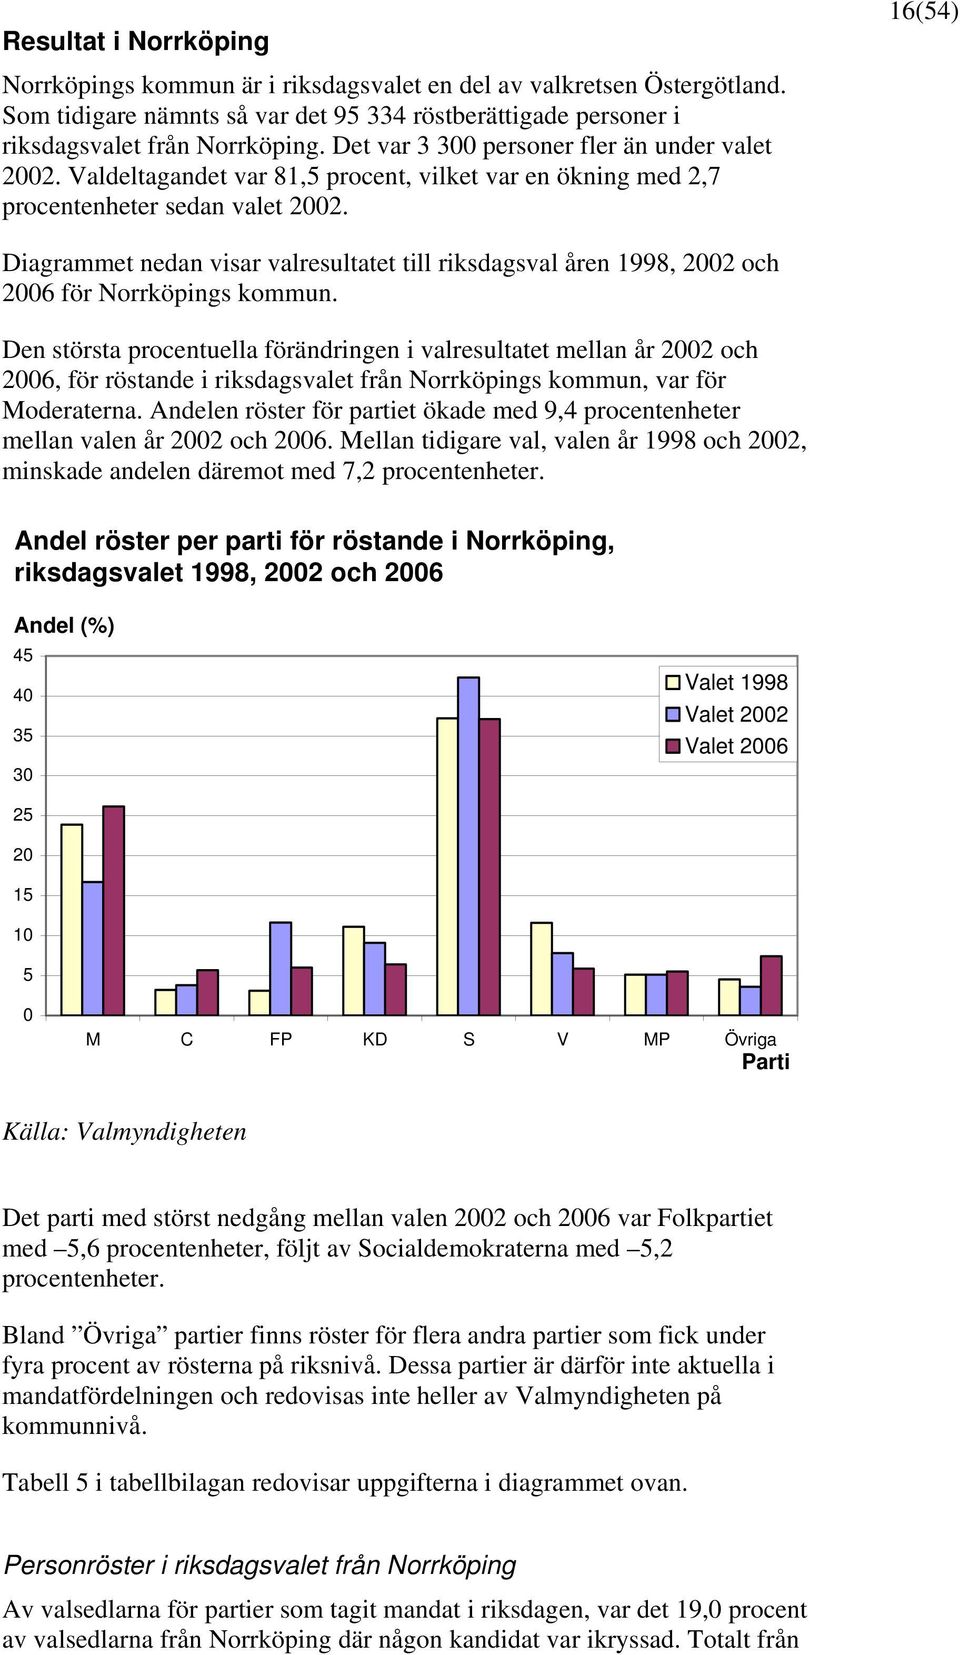 16(54) Diagrammet nedan visar valresultatet till riksdagsval åren 1998, 2002 och 2006 för Norrköpings kommun.